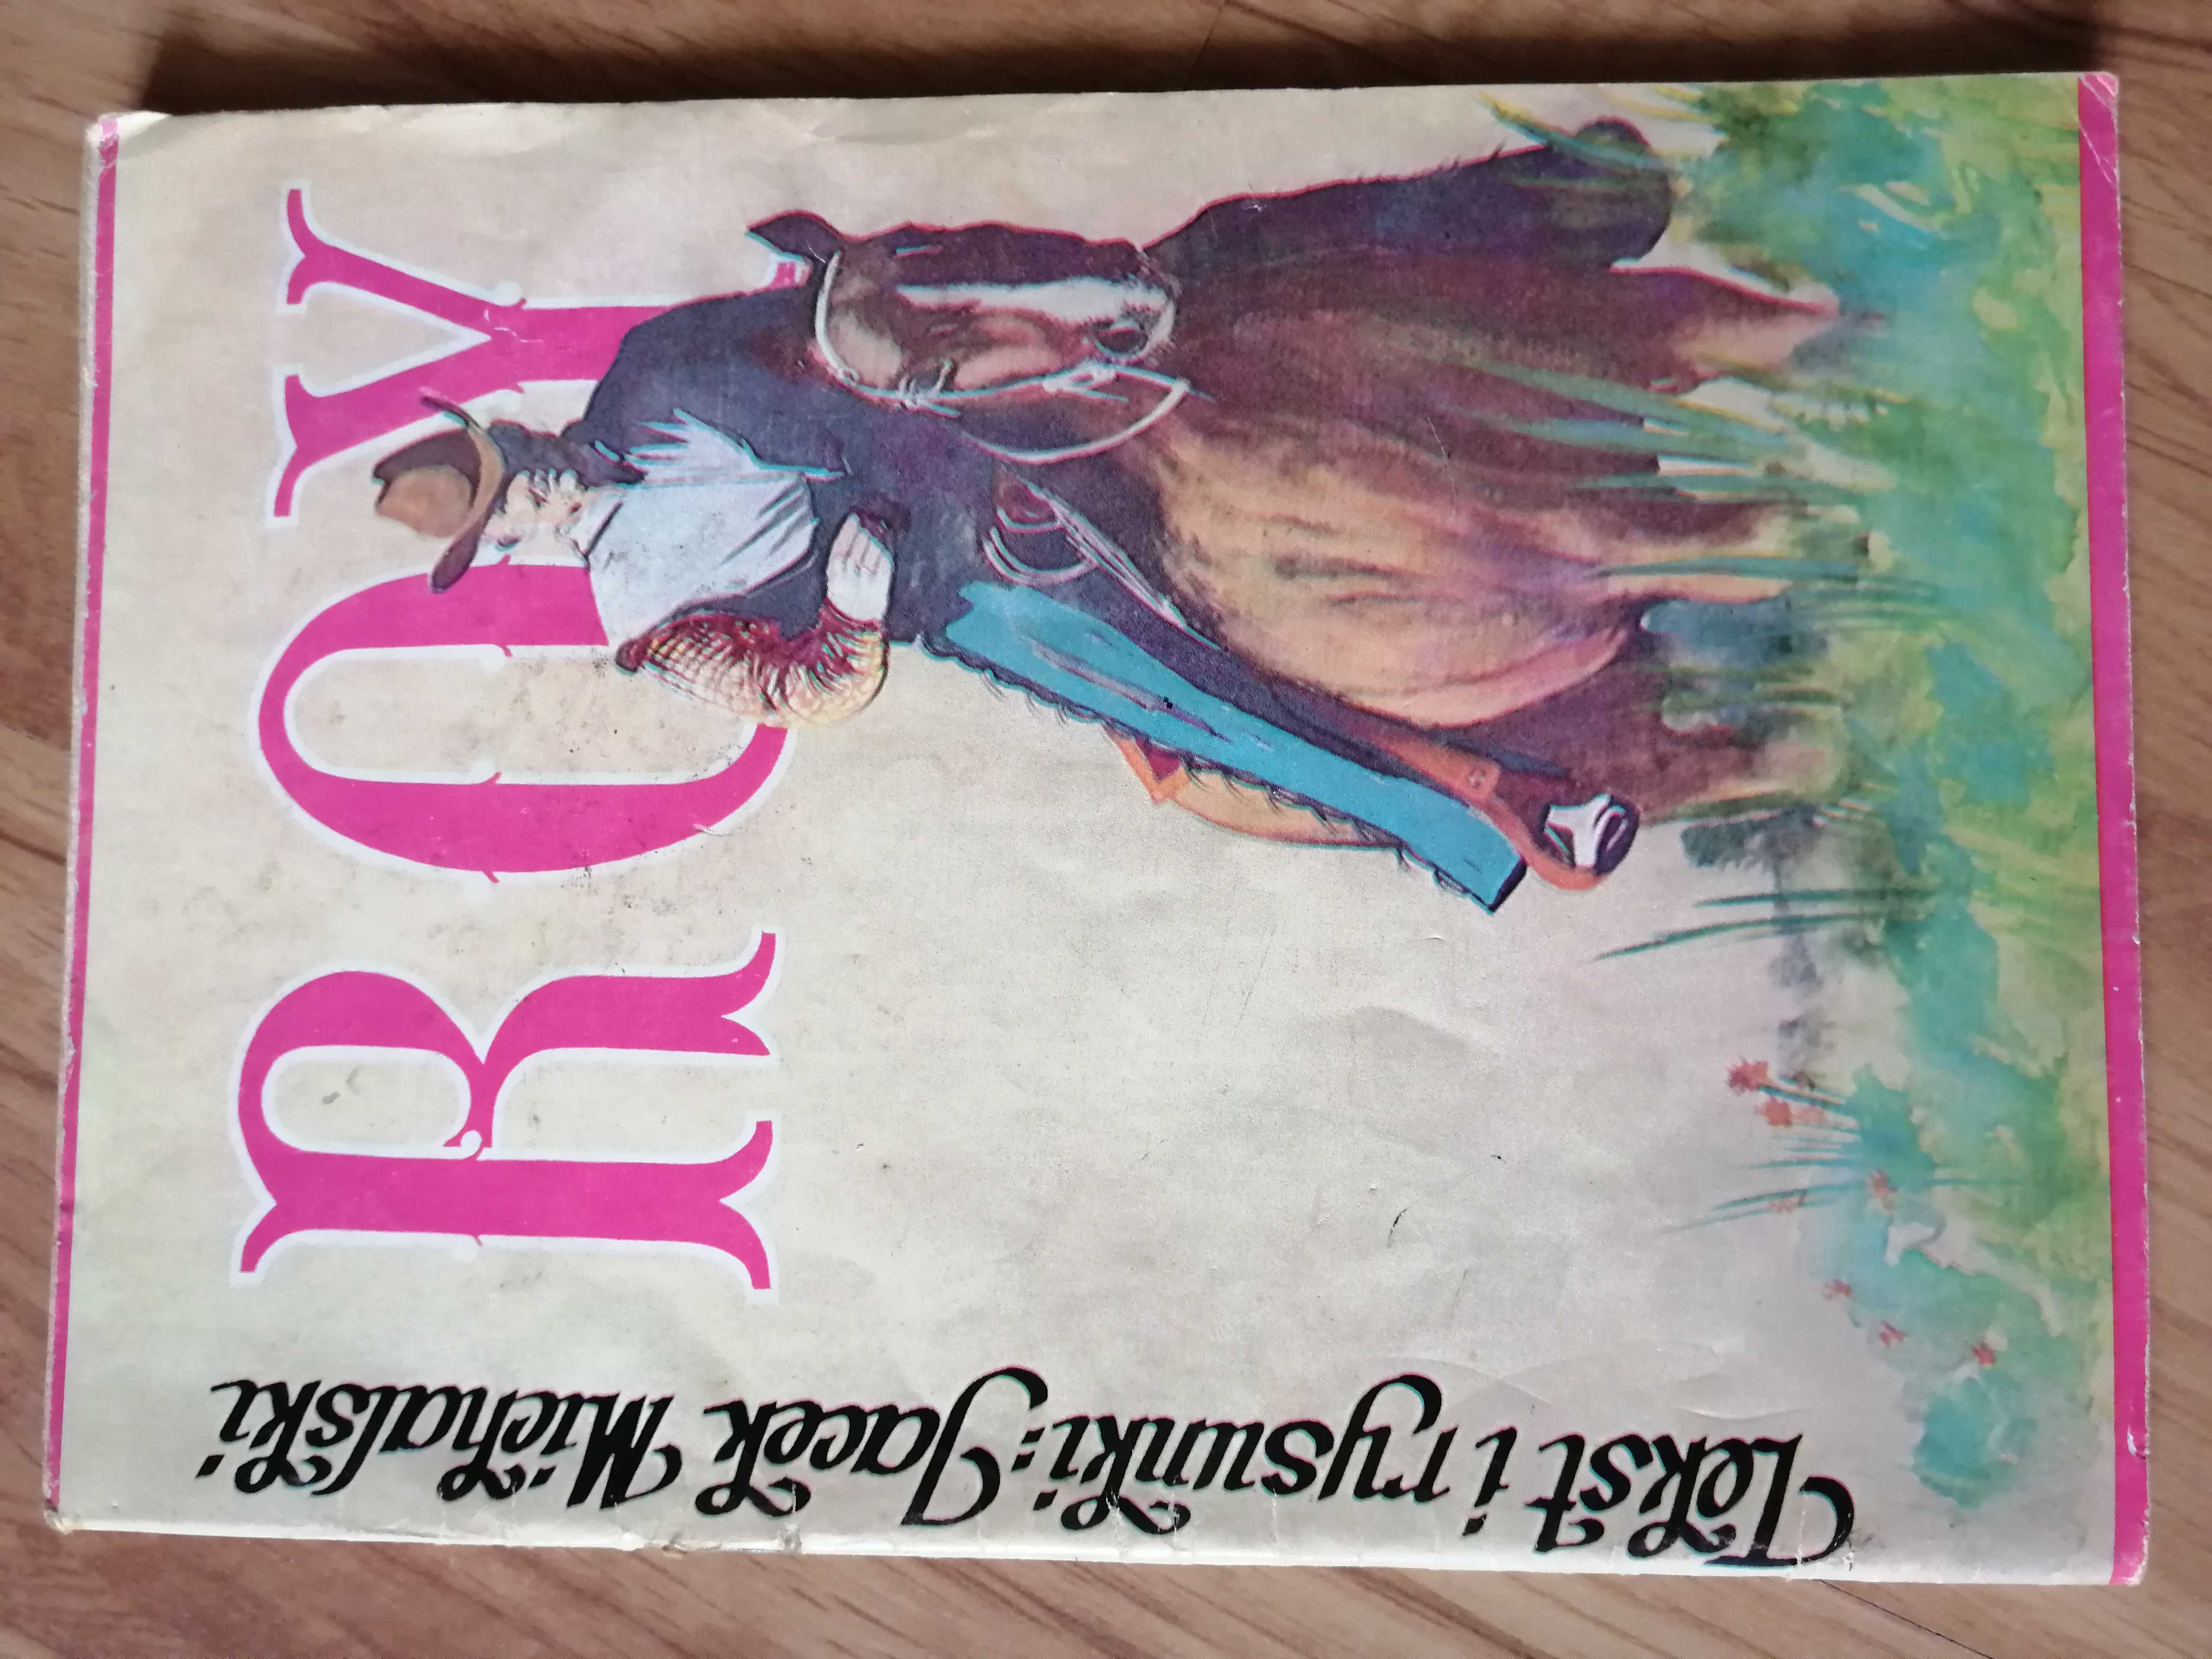 Roy komiks wyd. I 1989